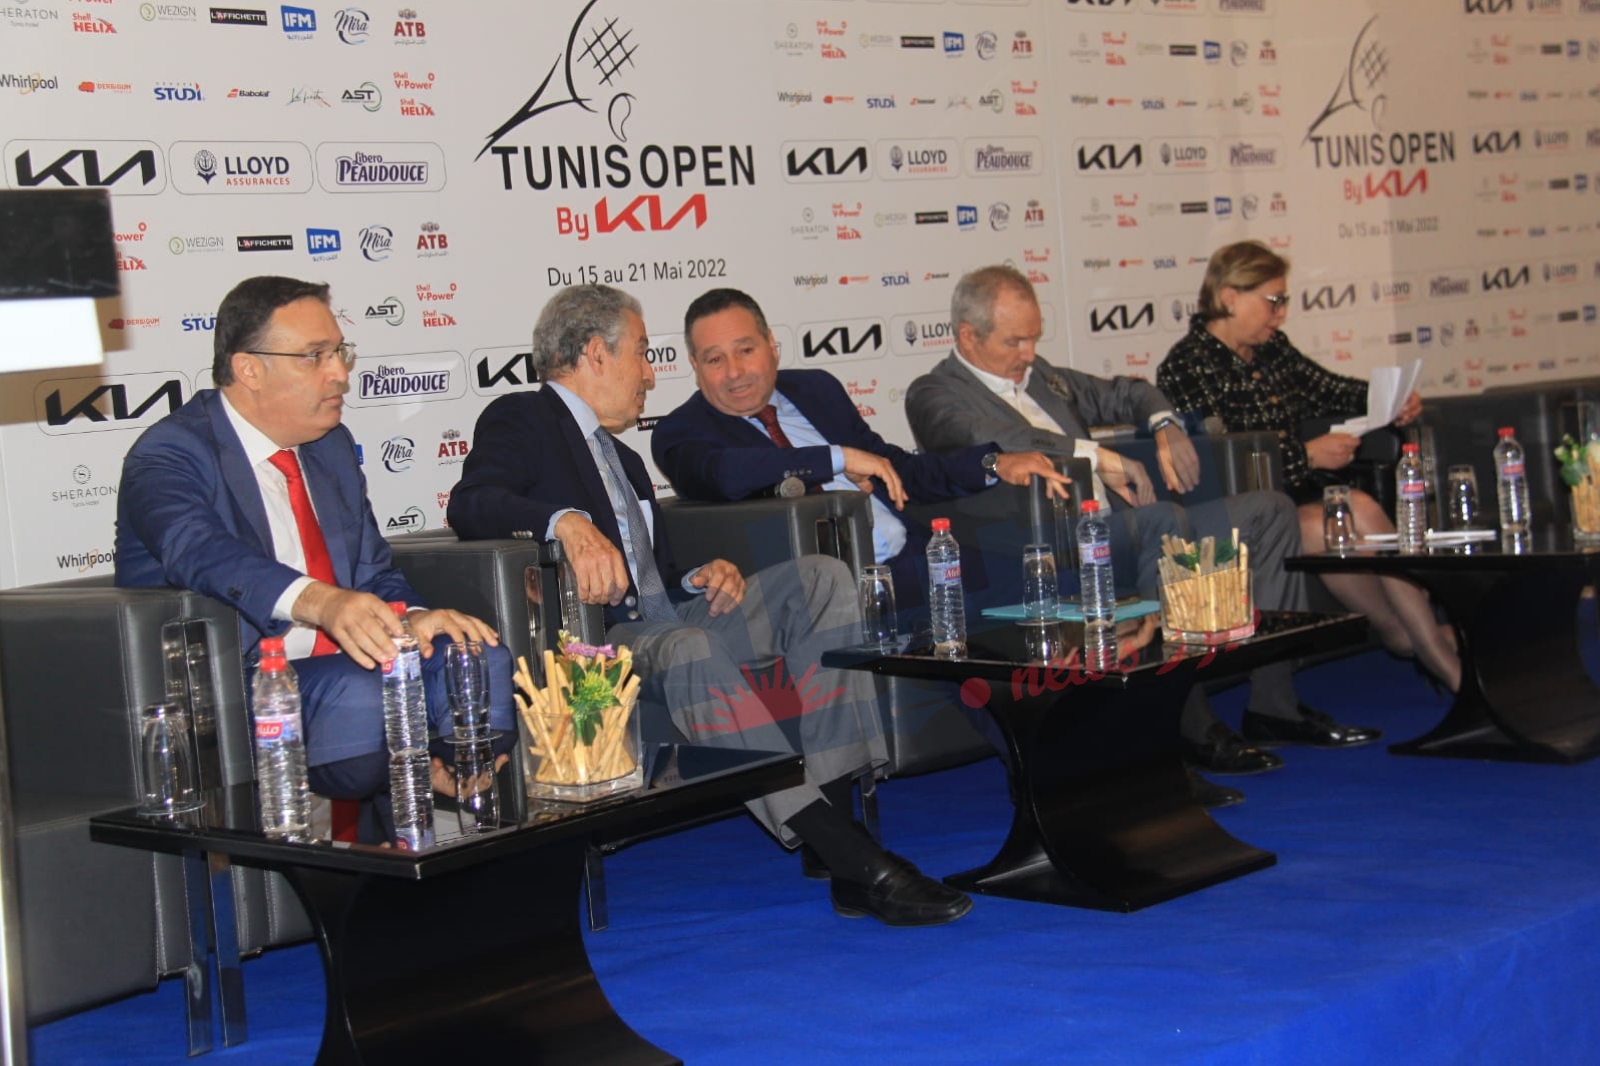 دورة تونس المفتوحة للتنس : مشاركة لاعبين من "التوب 100" ..ومالك الجزيري في الموعد 